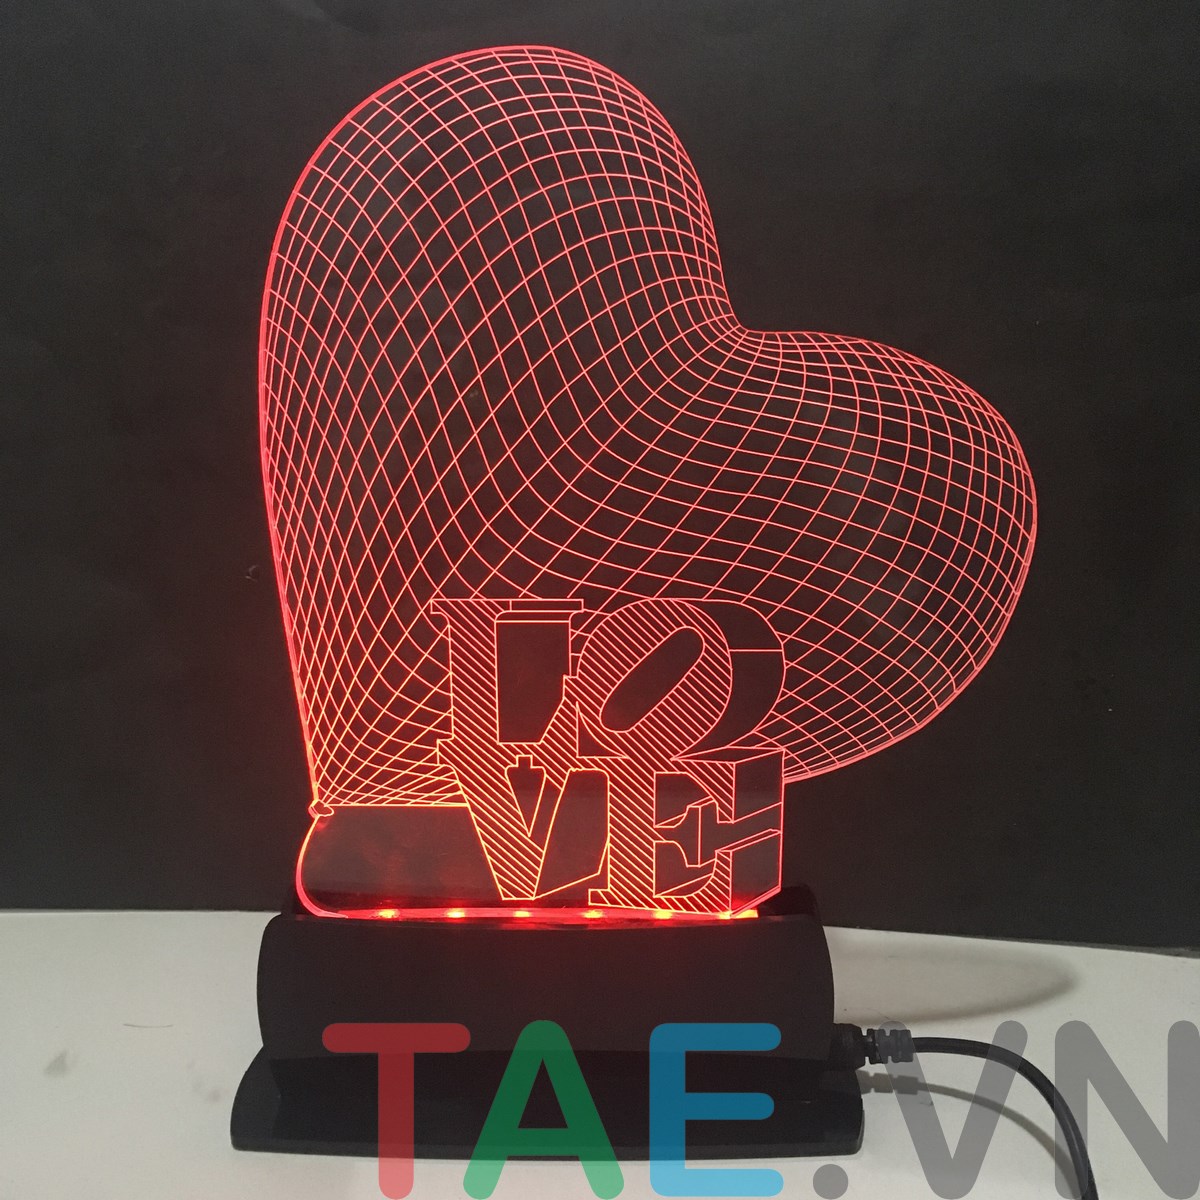 Đèn Mica 3D Trái Tim: Chắc hẳn bạn sẽ bị cuốn hút bởi thiết kế độc đáo và rực rỡ của đèn Mica 3D trái tim. Hãy cùng xem những hình ảnh để khám phá thêm về sản phẩm này và thể hiện tình yêu của bạn.